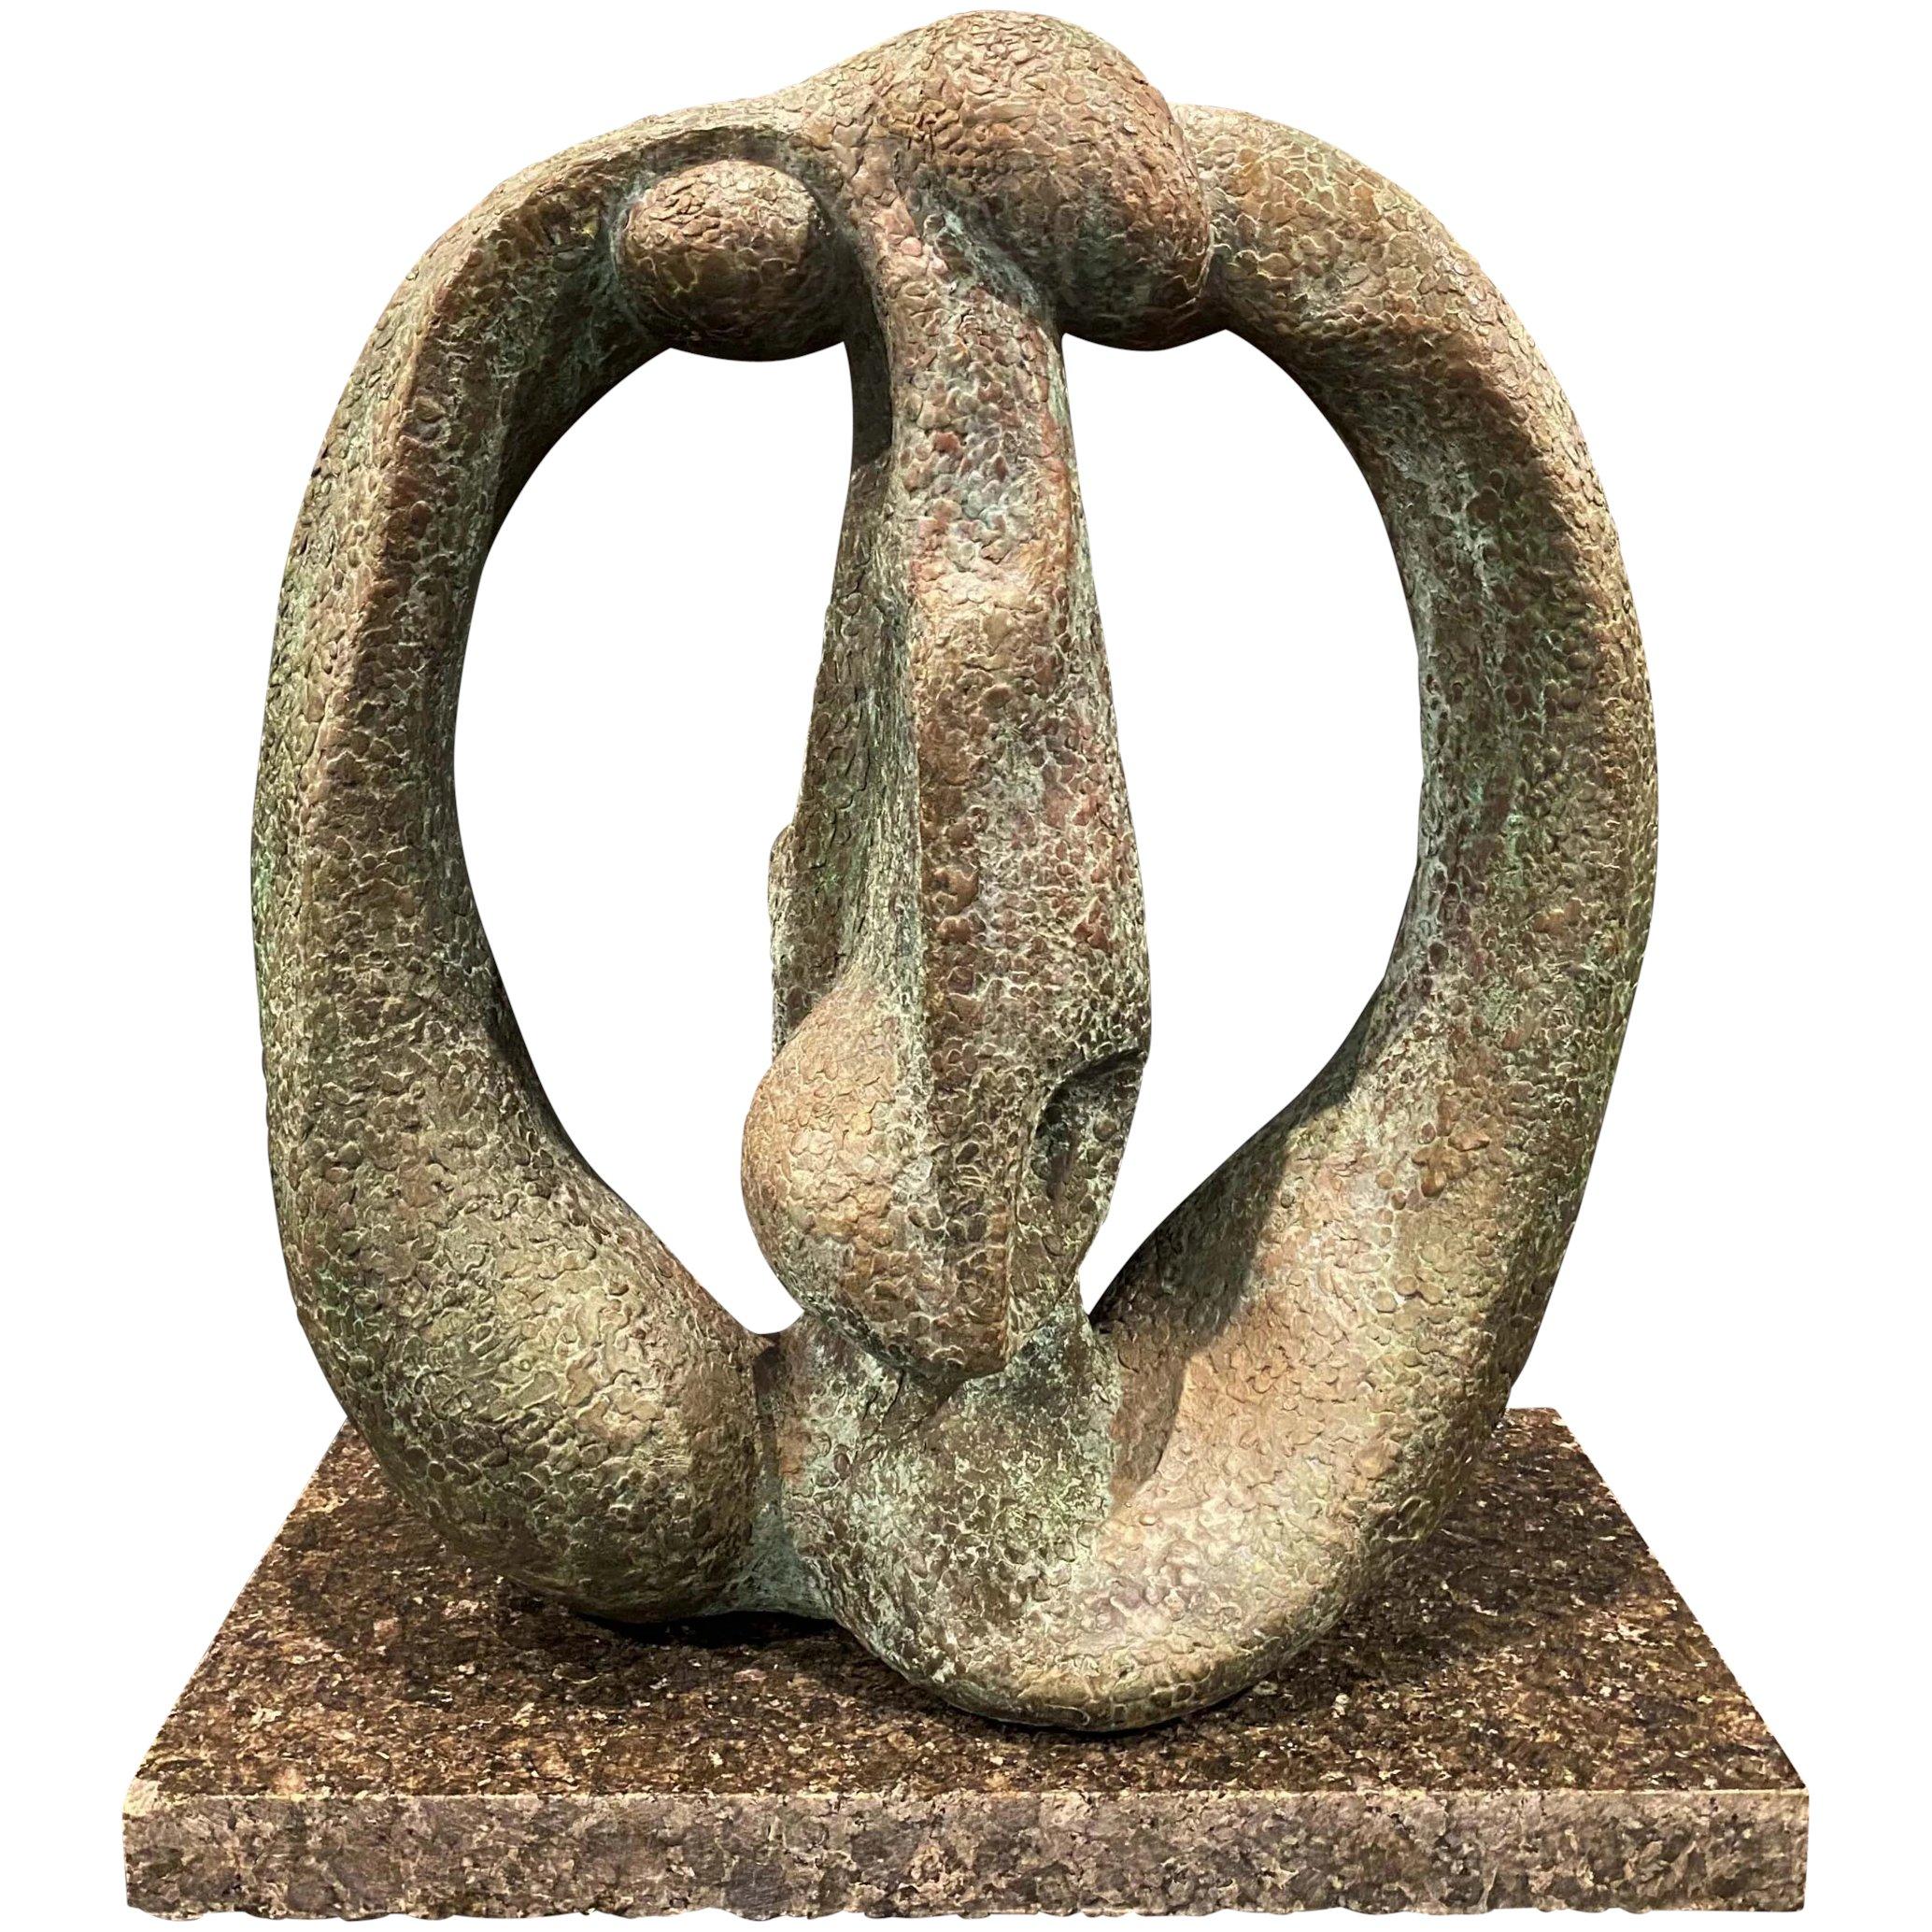 Abstract Sculpture in Bronze